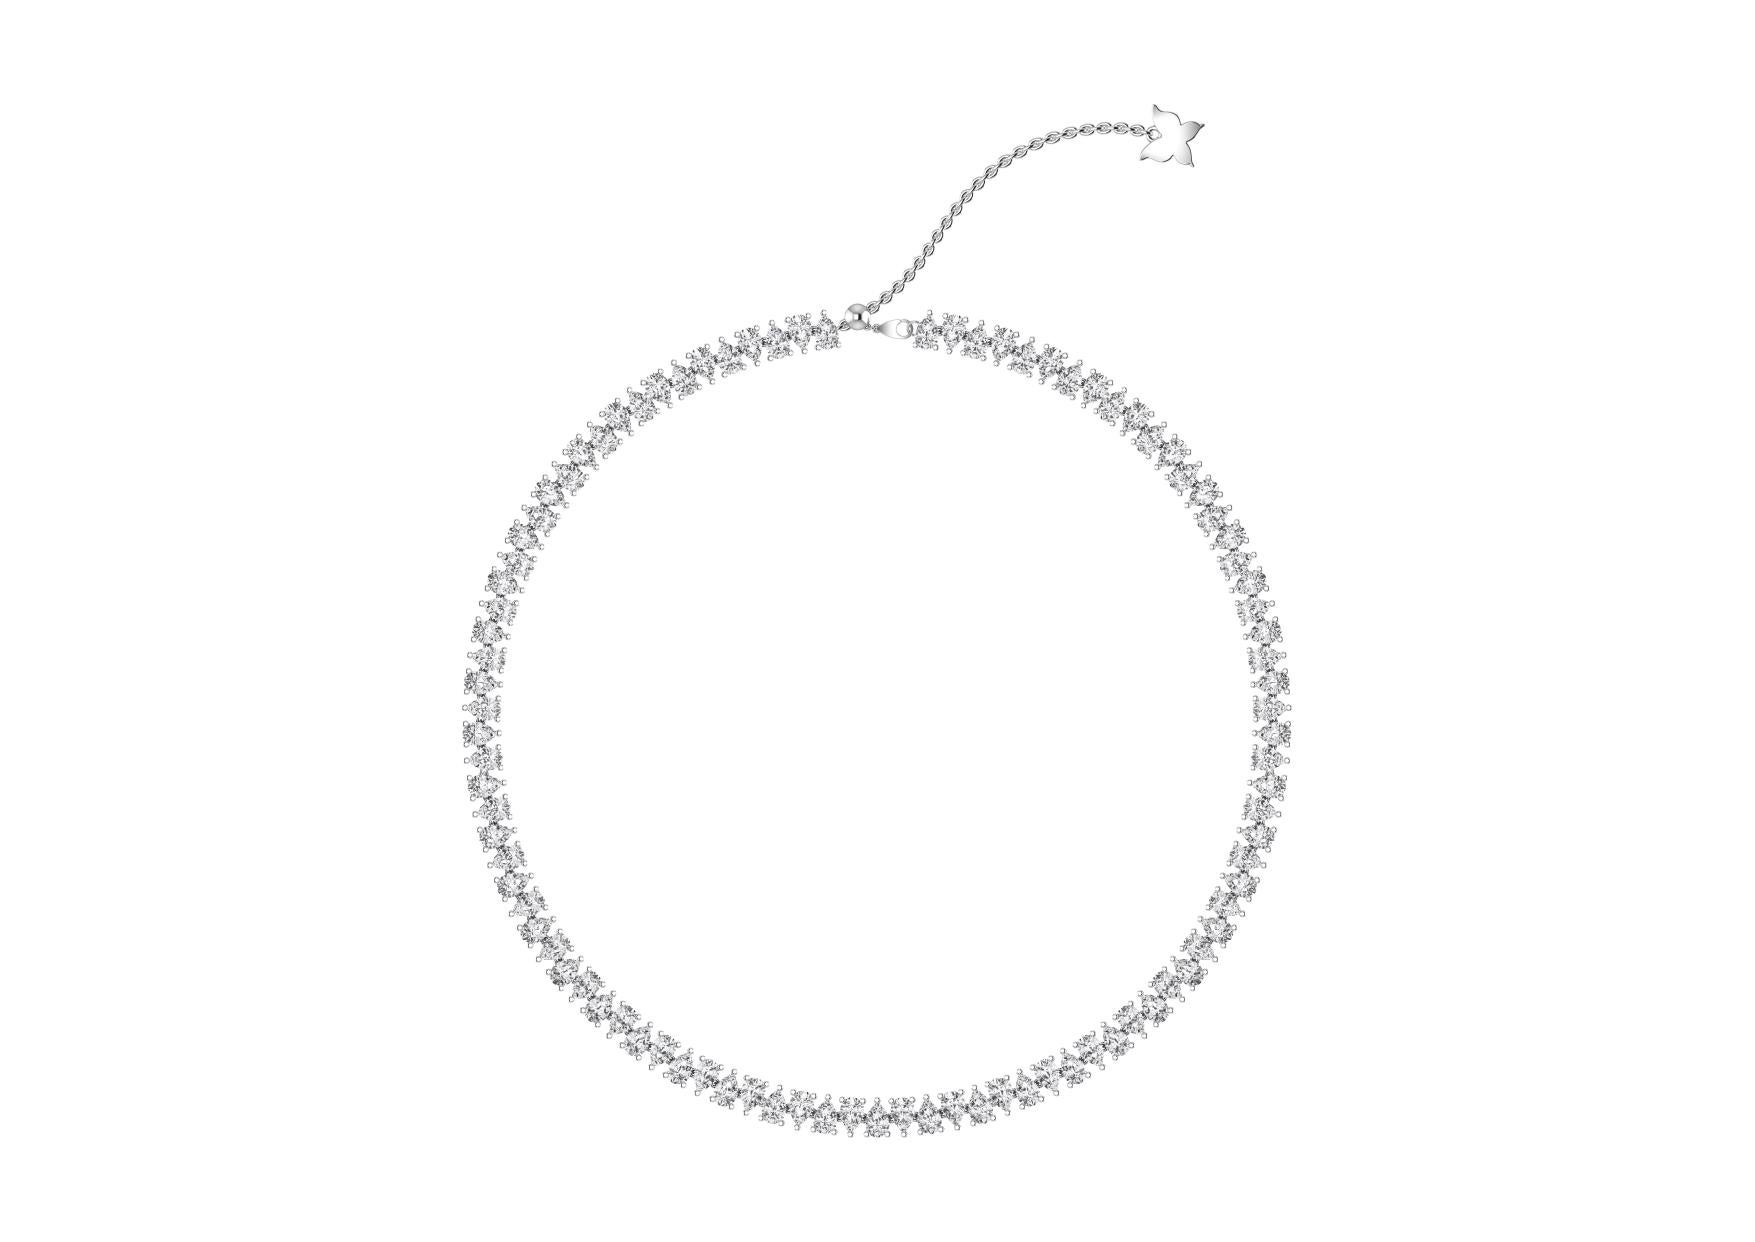 Modern 2 in 1 Twin Pear Shape Diamond Choker Necklace in 18 Karat White Gold. For Sale